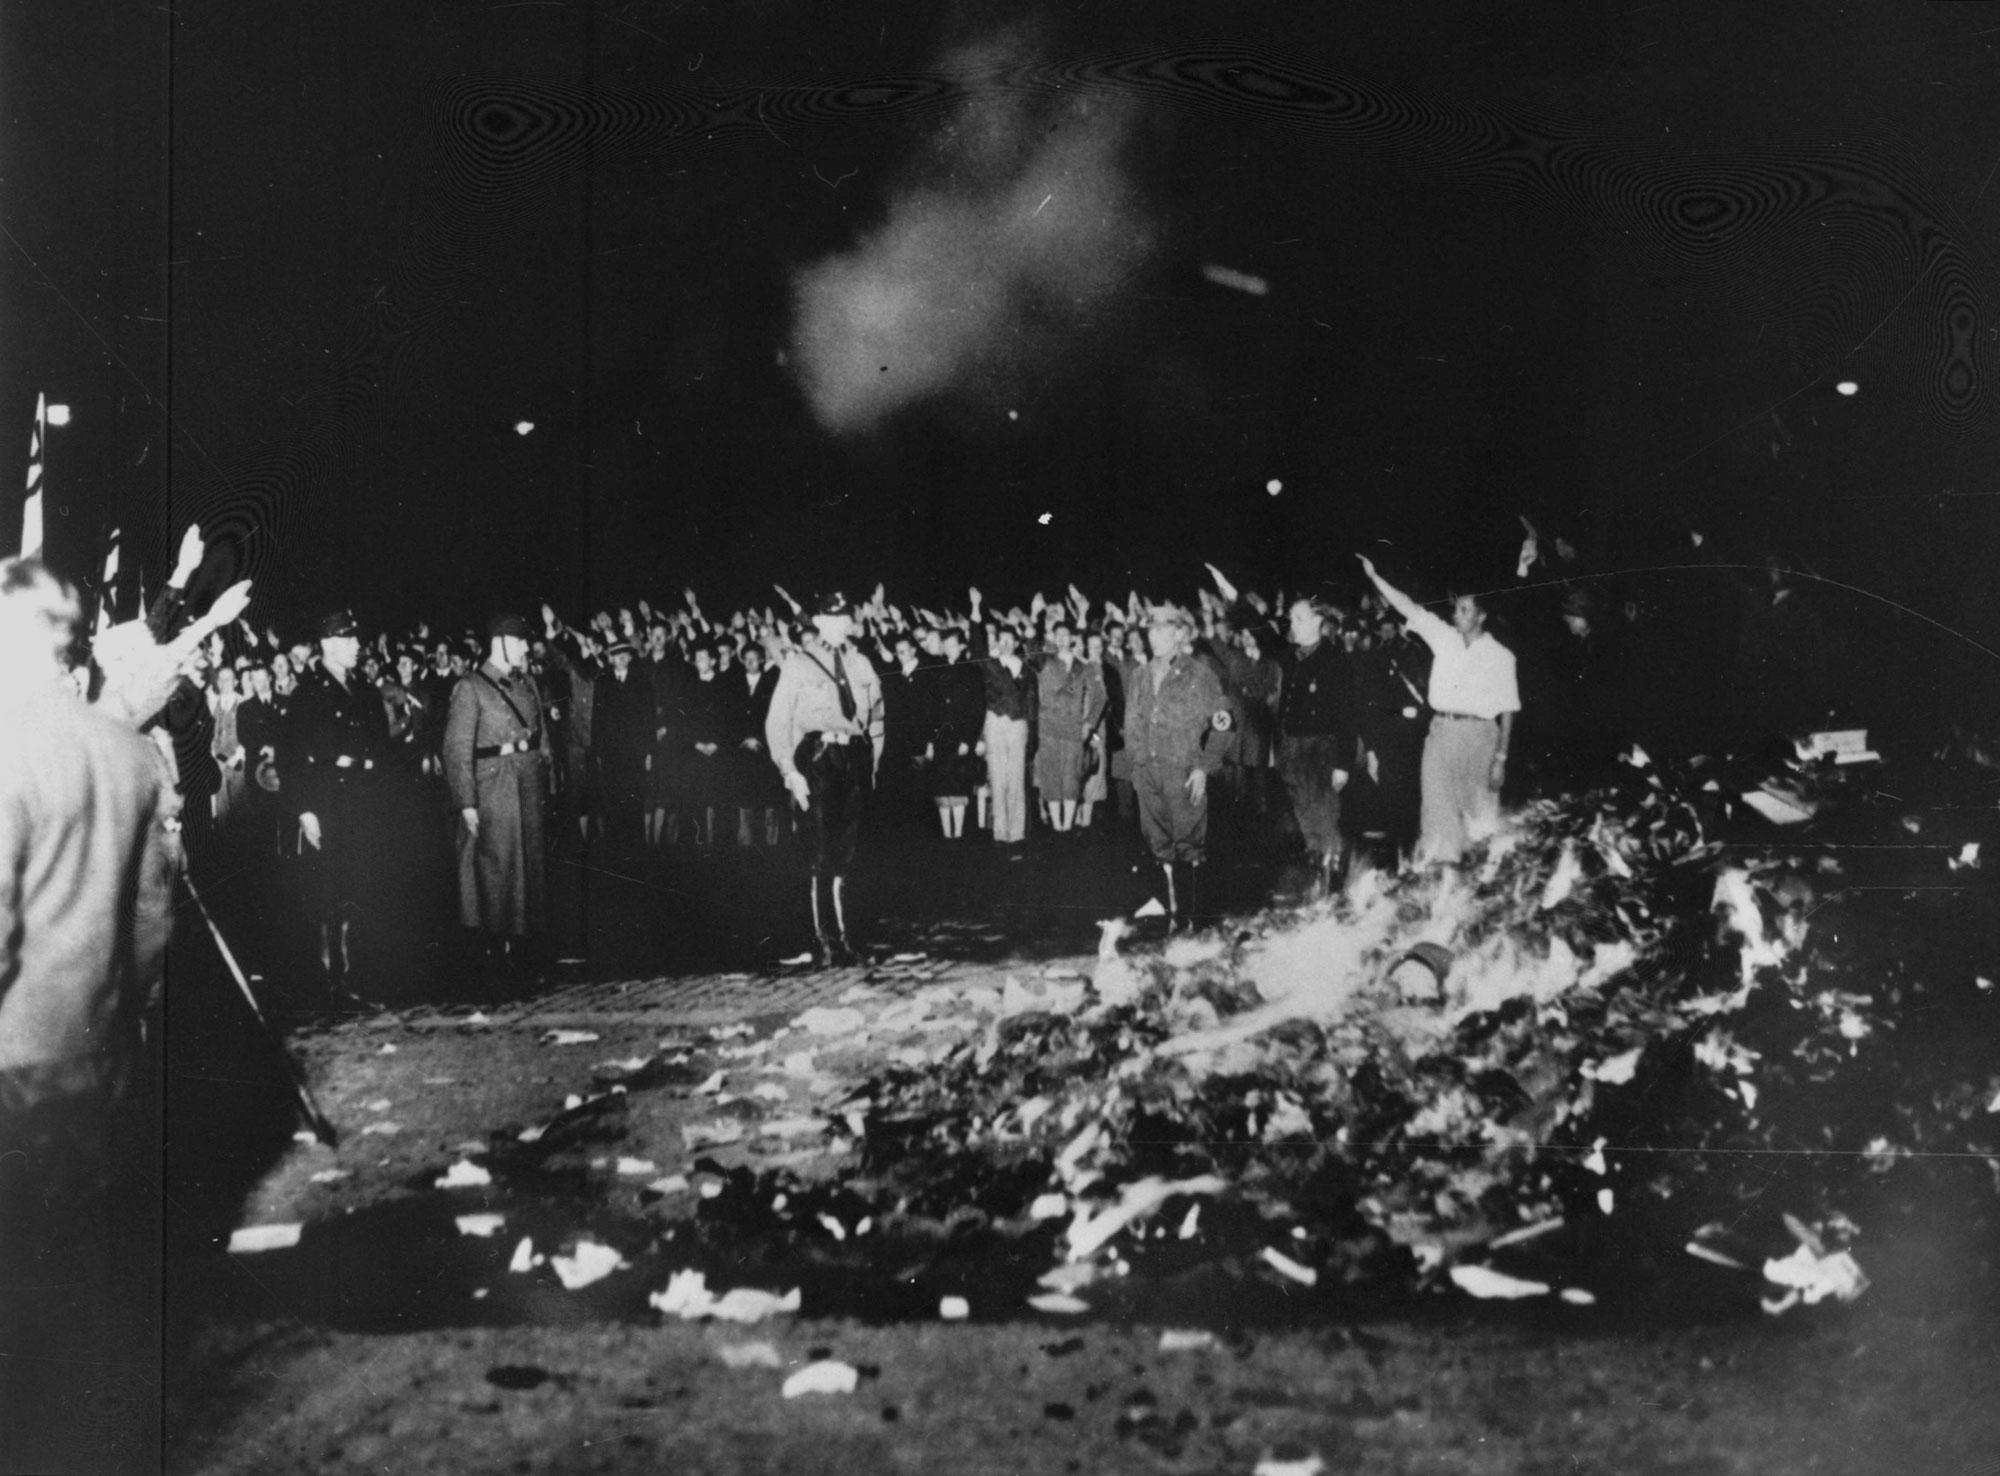 Le premier autodafé remonte au 10 mai 1933, à Berlin. Des dizaines de milliers de livres d'intellectuels sont jetés au feu. [Roger-Viollet/AFP - US National Archives]